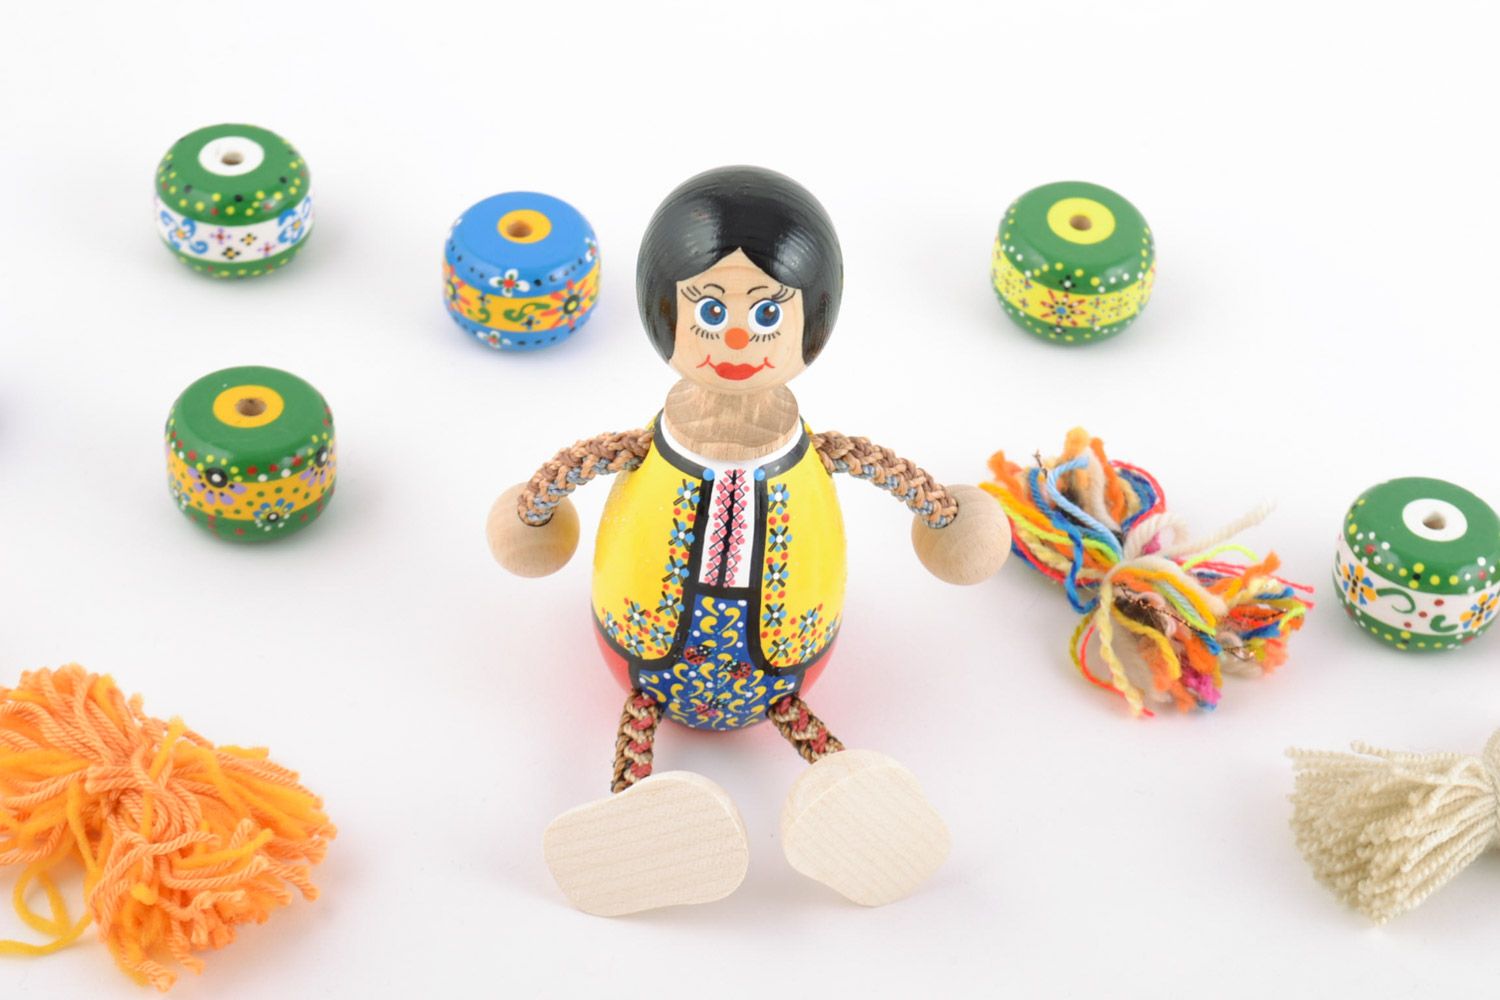 Handmade Spielzeug aus Holz für Kinder mit Ökofarben bemalt foto 1